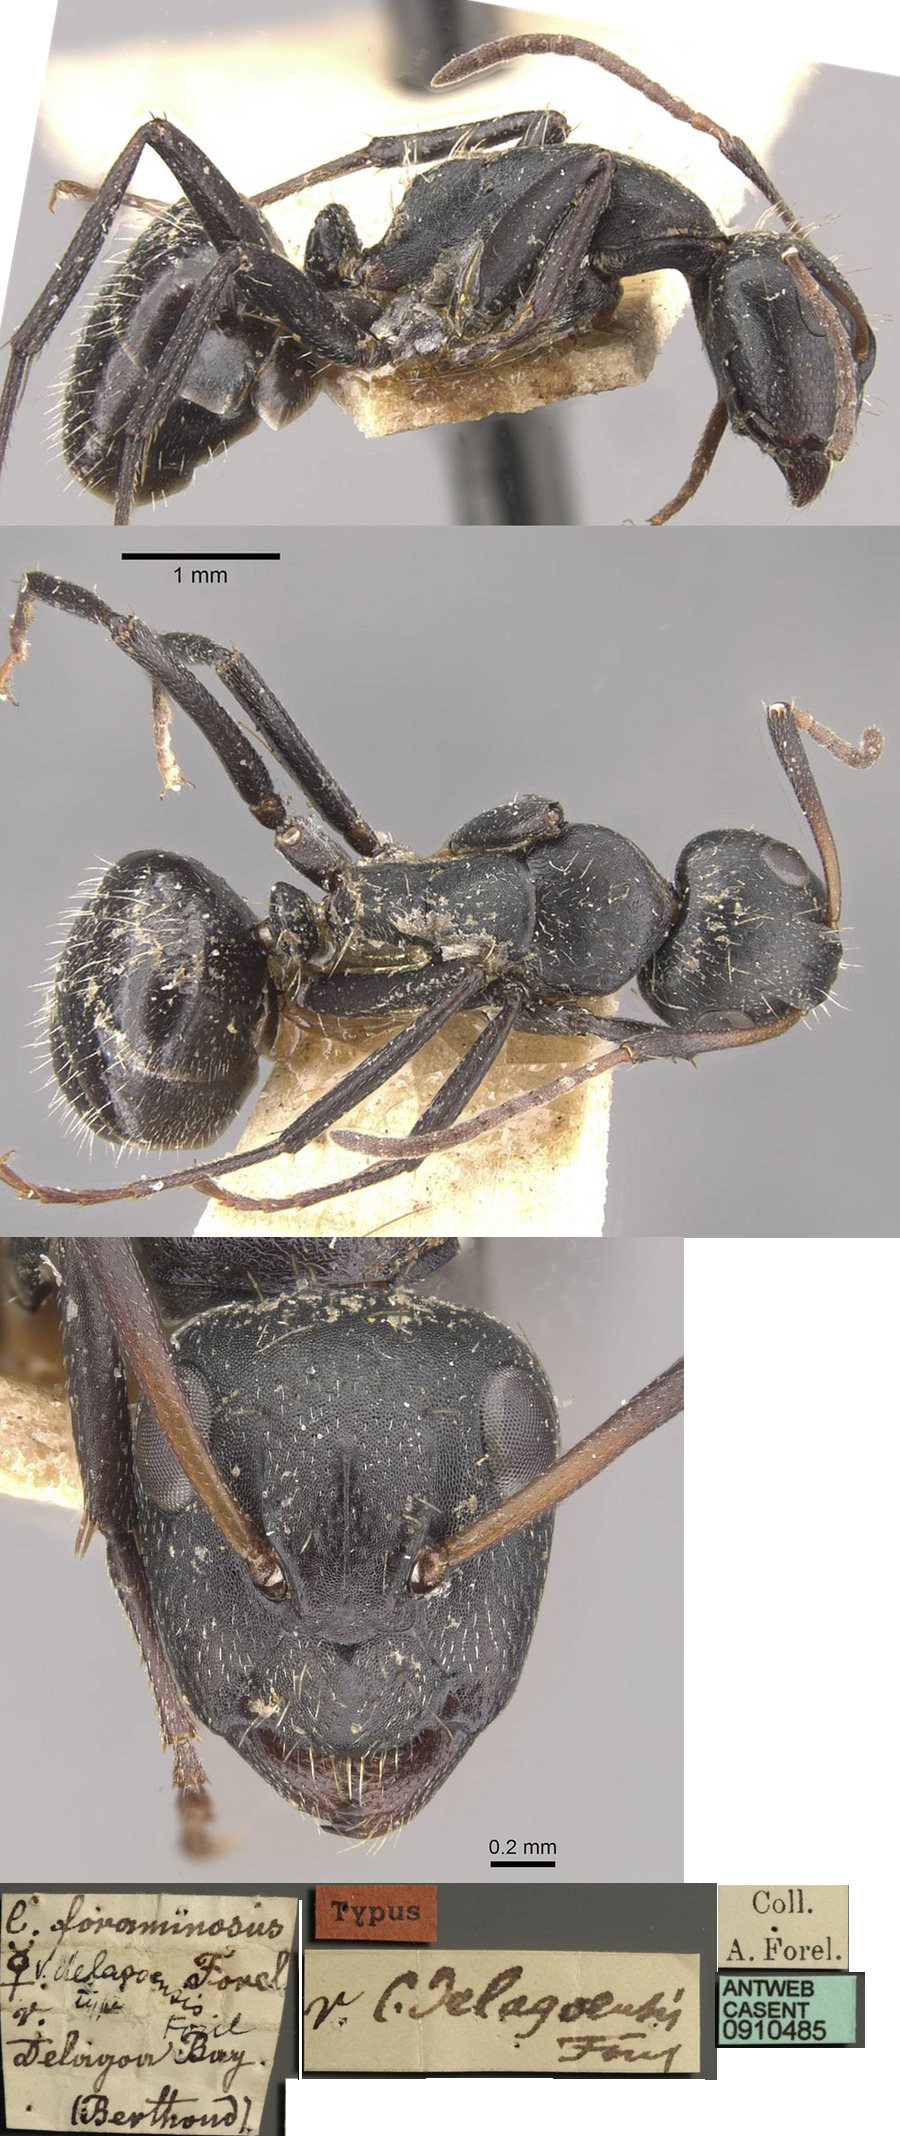 {Camponotus olivieri delagoensis minor}